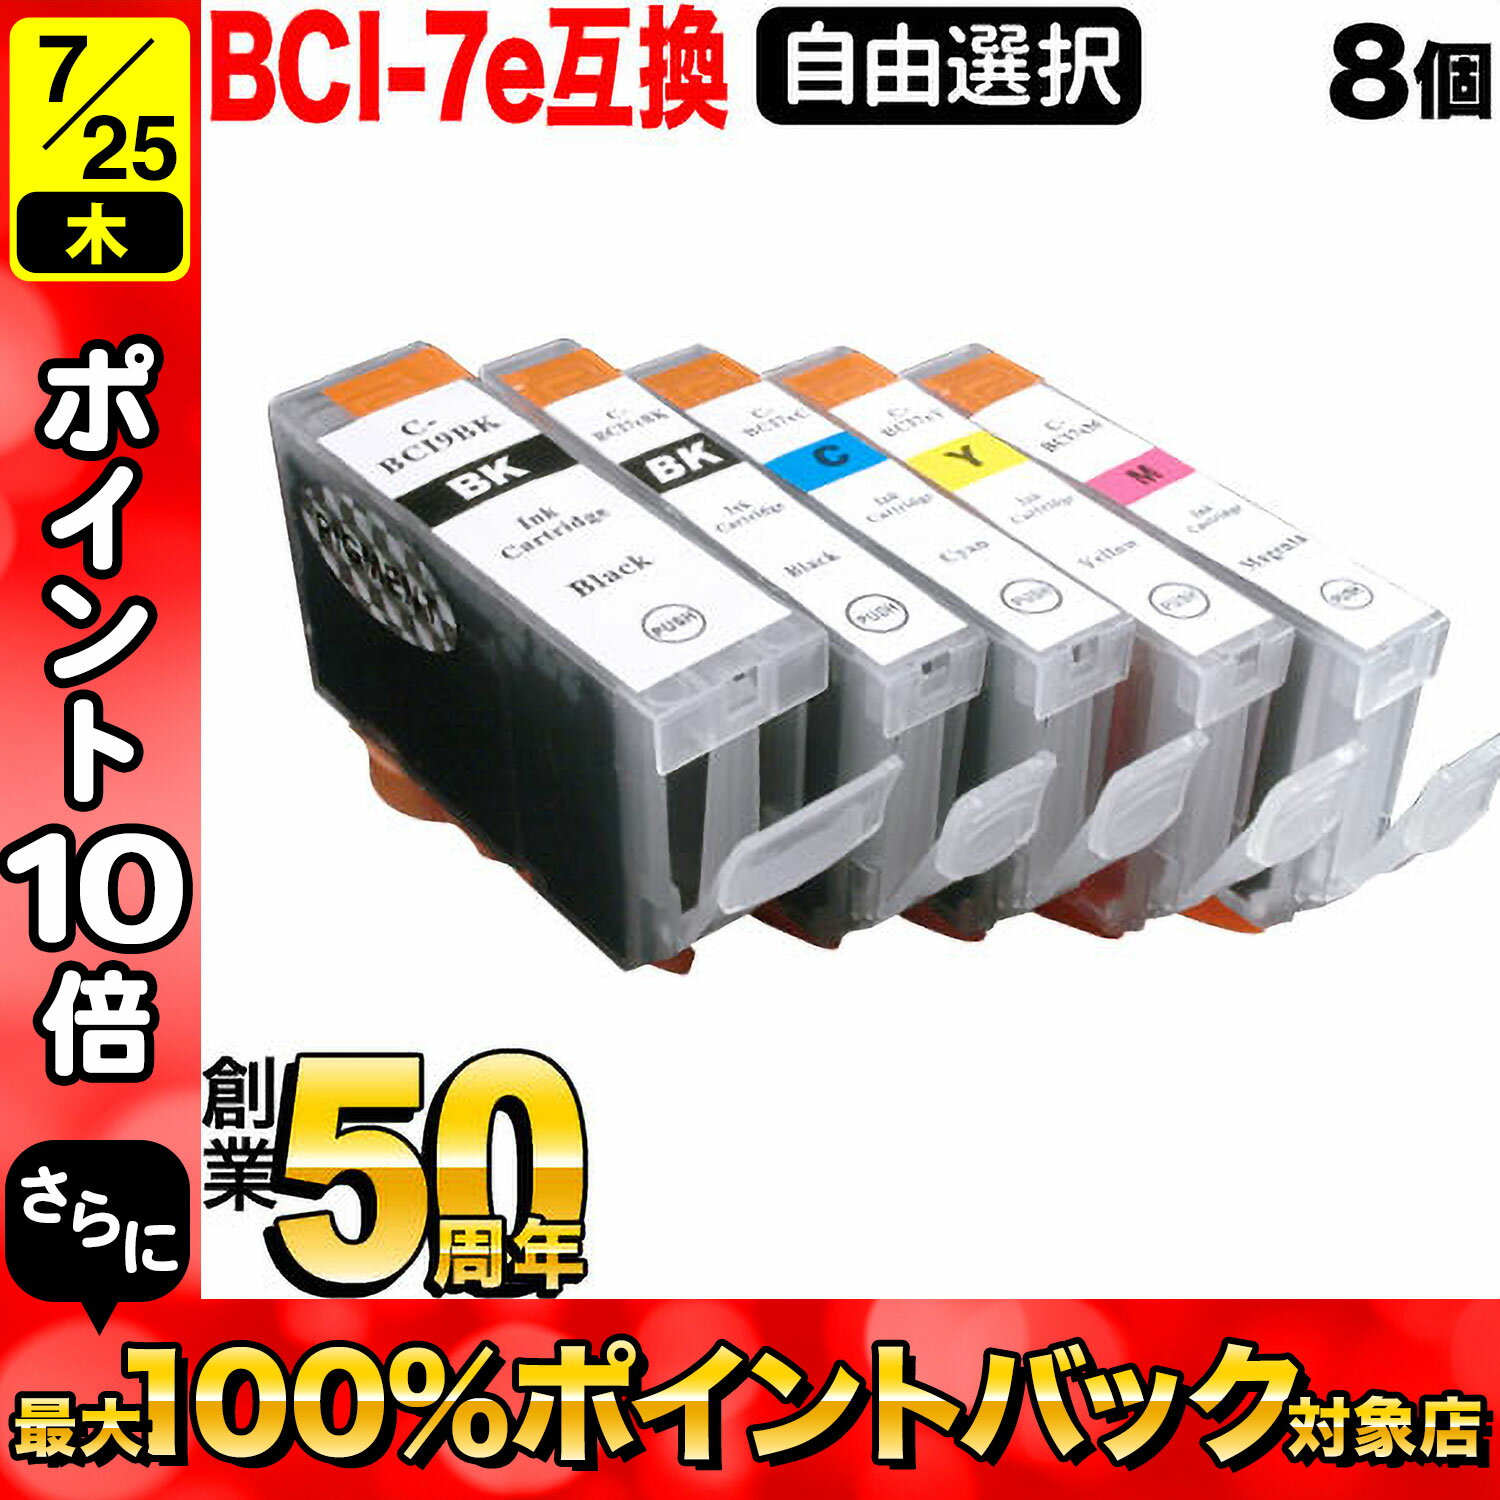 BCI-7E+9 キヤノン用 互換インクカー